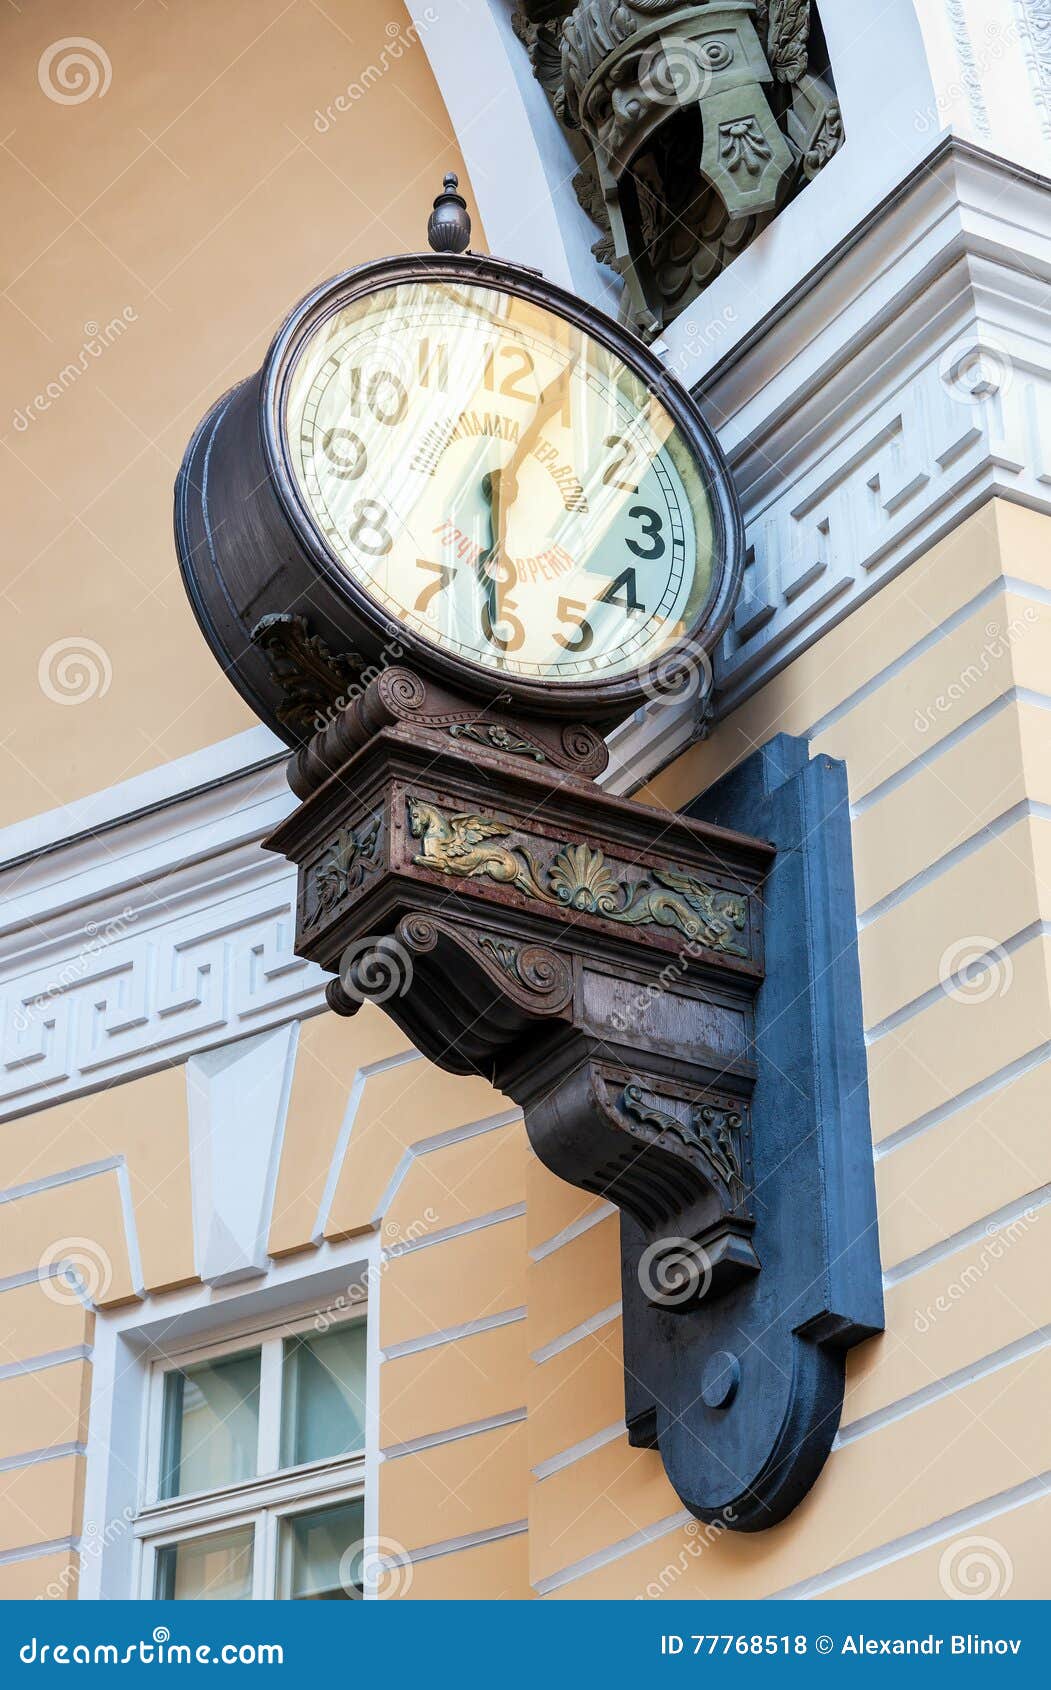 Encantador Silicio Chaleco El Primer Reloj Eléctrico En St Petersburg Y X28; 1905& X29; En El Arco De  Foto de archivo - Imagen de edificio, minuto: 77768518